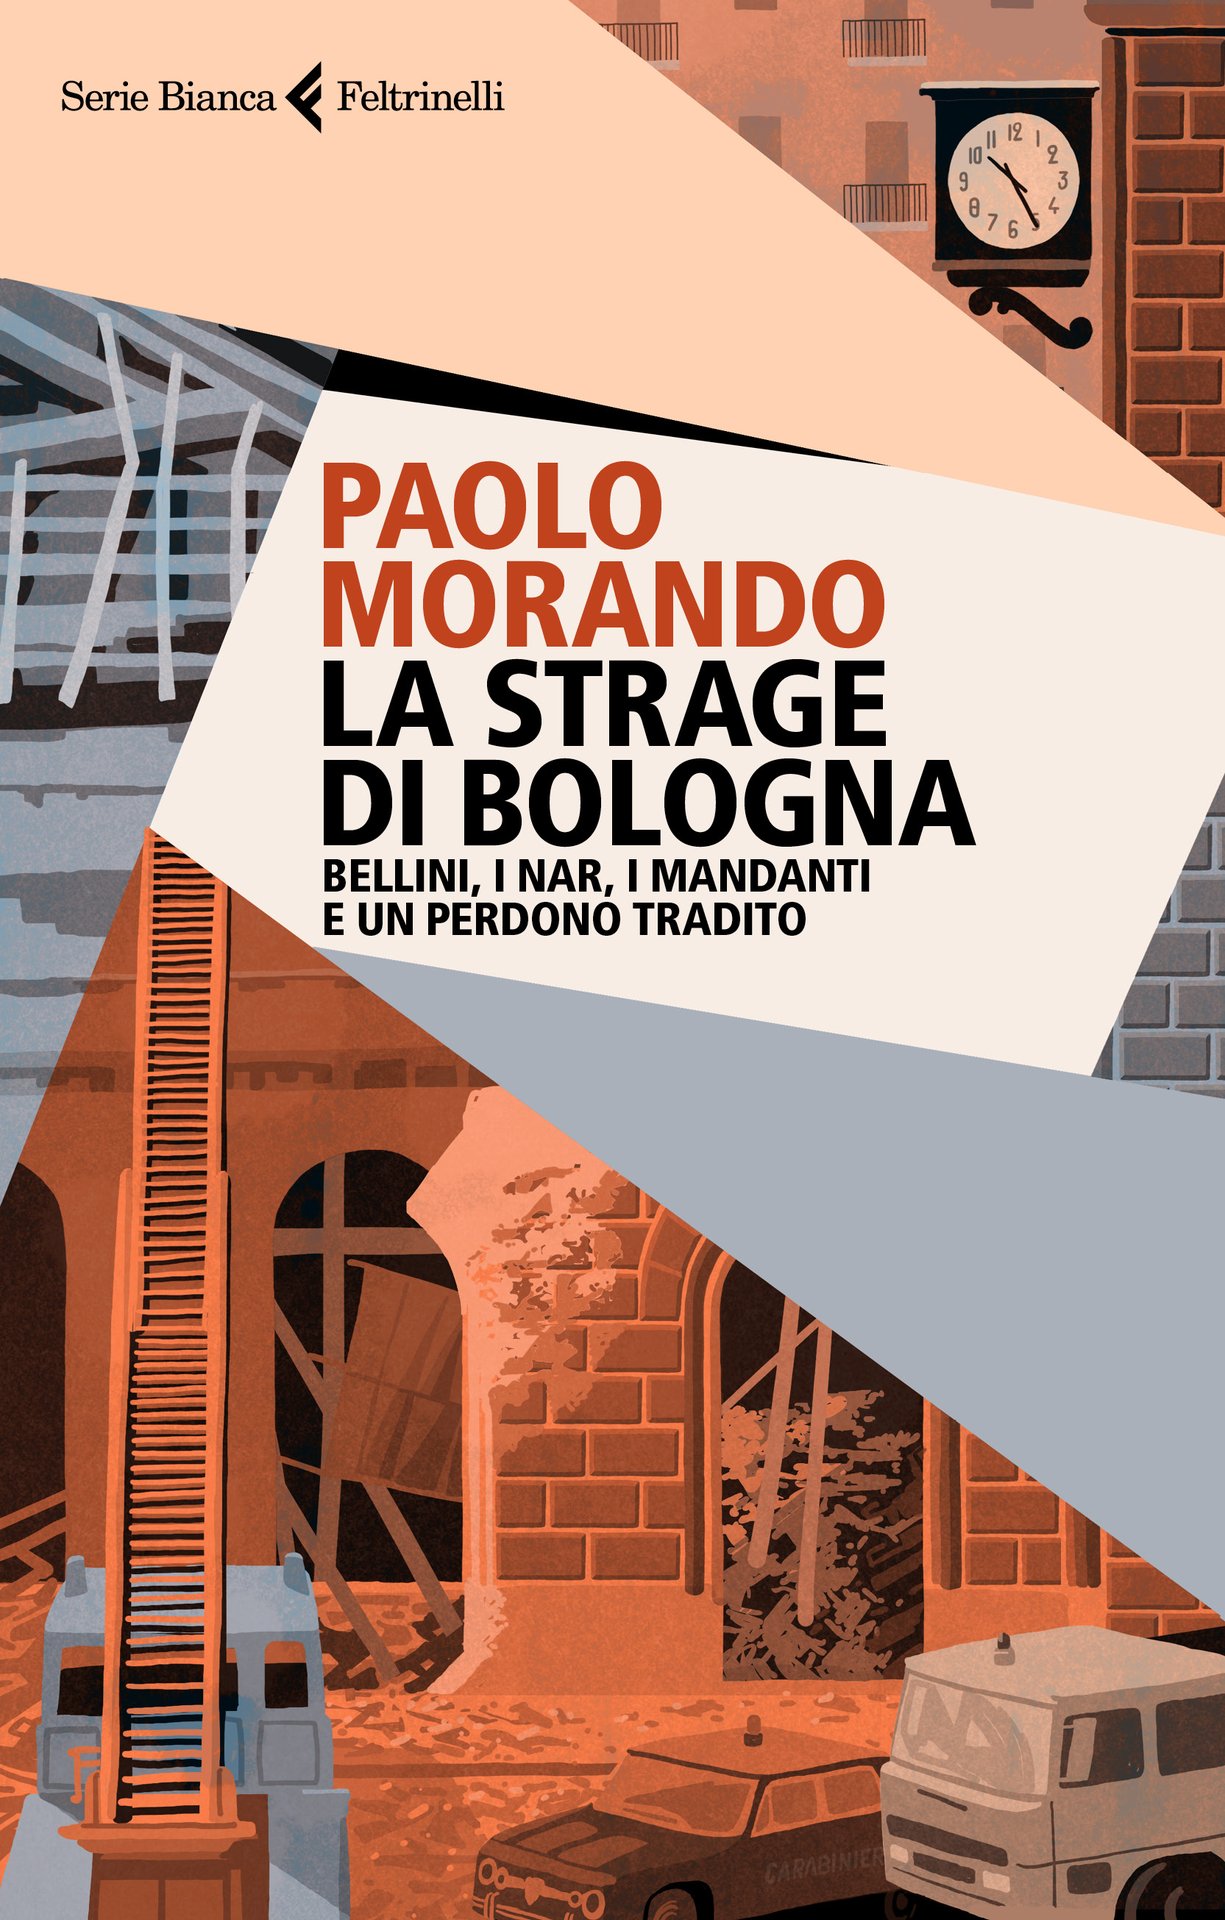 Paolo Morando presenta "La strage di Bologna" a "All you need is pop"